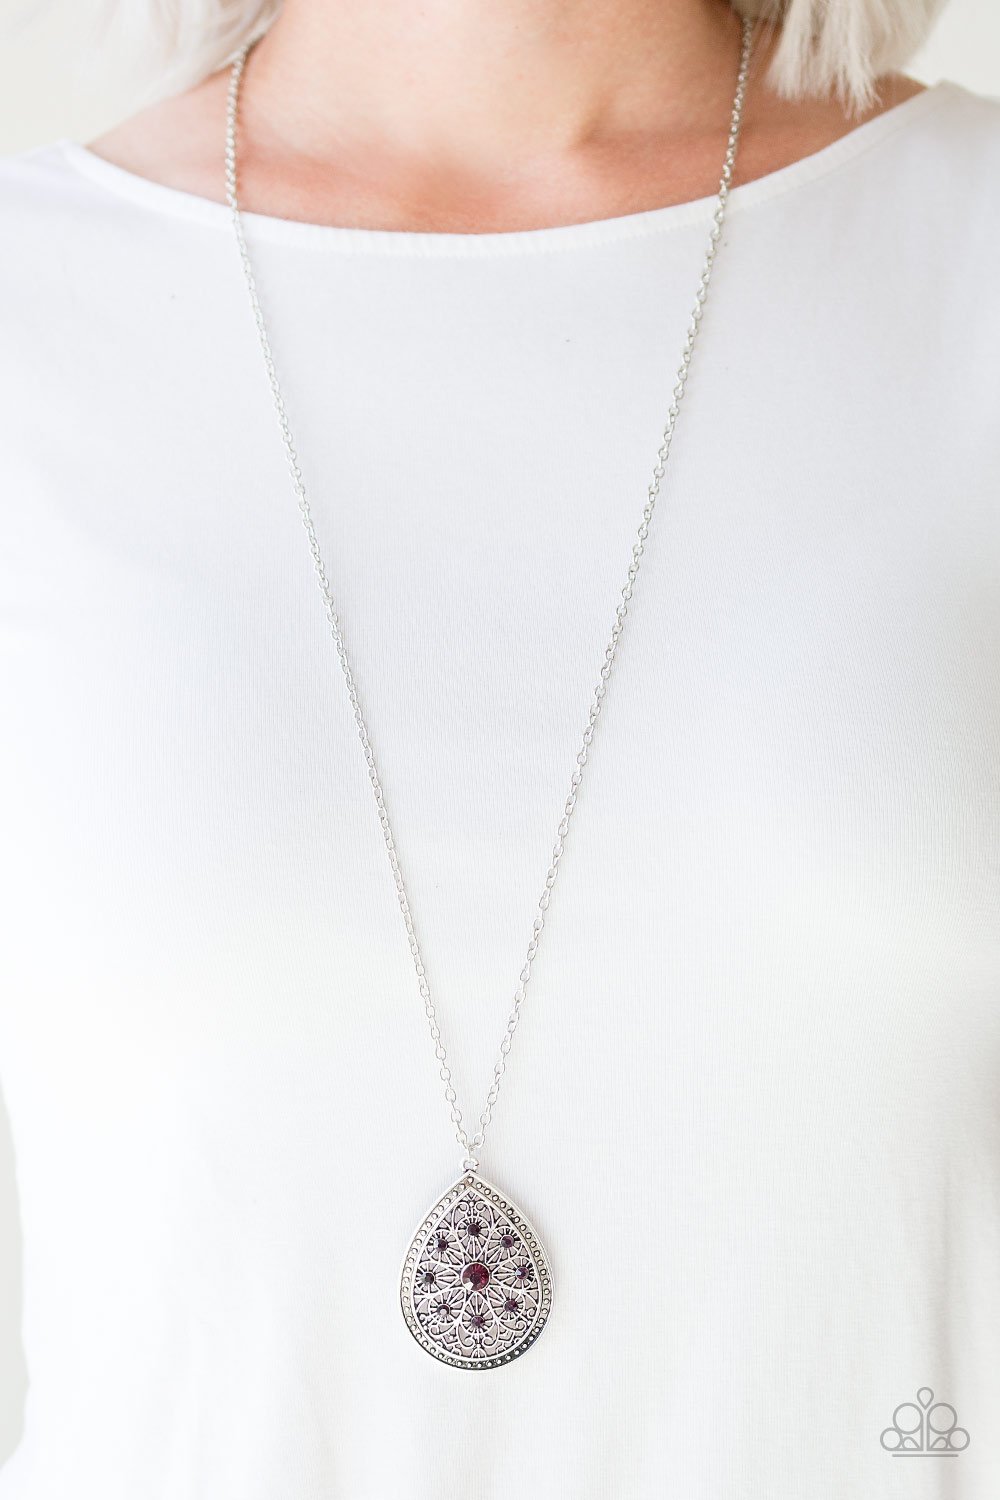 Paparazzi I Am Queen - Purple - Teardrop Pendant - Silver Necklace & Earrings - $5 Jewelry with Ashley Swint